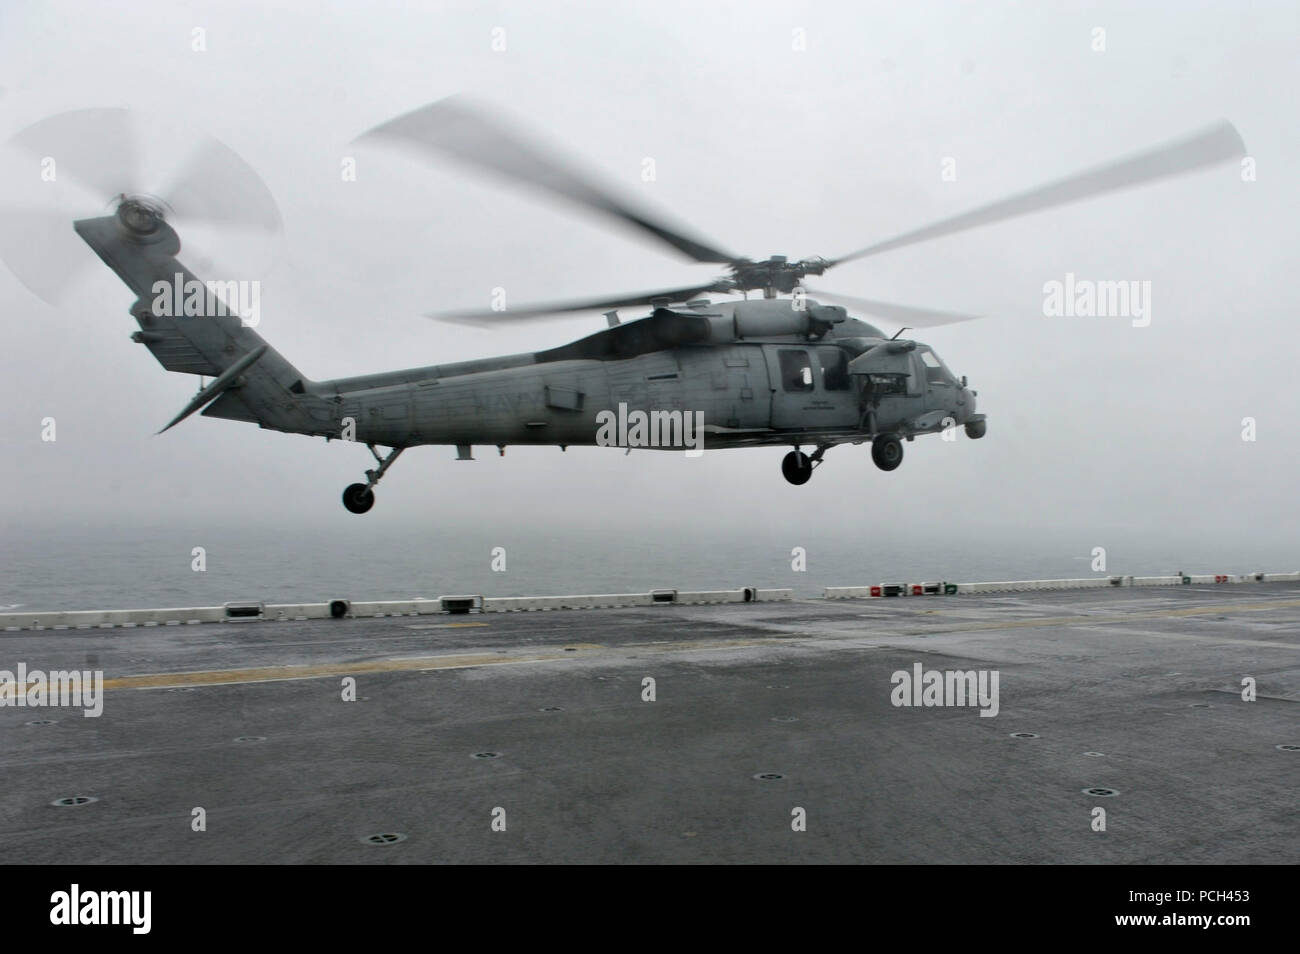 Un U.S. Navy MH-60S Seahawk elicottero assegnato al mare in elicottero Combat Squadron (HSC) 25 atterra sul ponte di volo dell'assalto anfibio nave USS Bonhomme Richard (LHD 6) 17 aprile 2014 nel Mar Cinese Orientale. La nave ha fornito sostegno alla richiesta della Corea del Sud agli aiuti per gli sforzi di salvataggio dei passeggeri del traghetto che Sewol capovolto vicino all'isola di Jindo un giorno precedente. Foto Stock